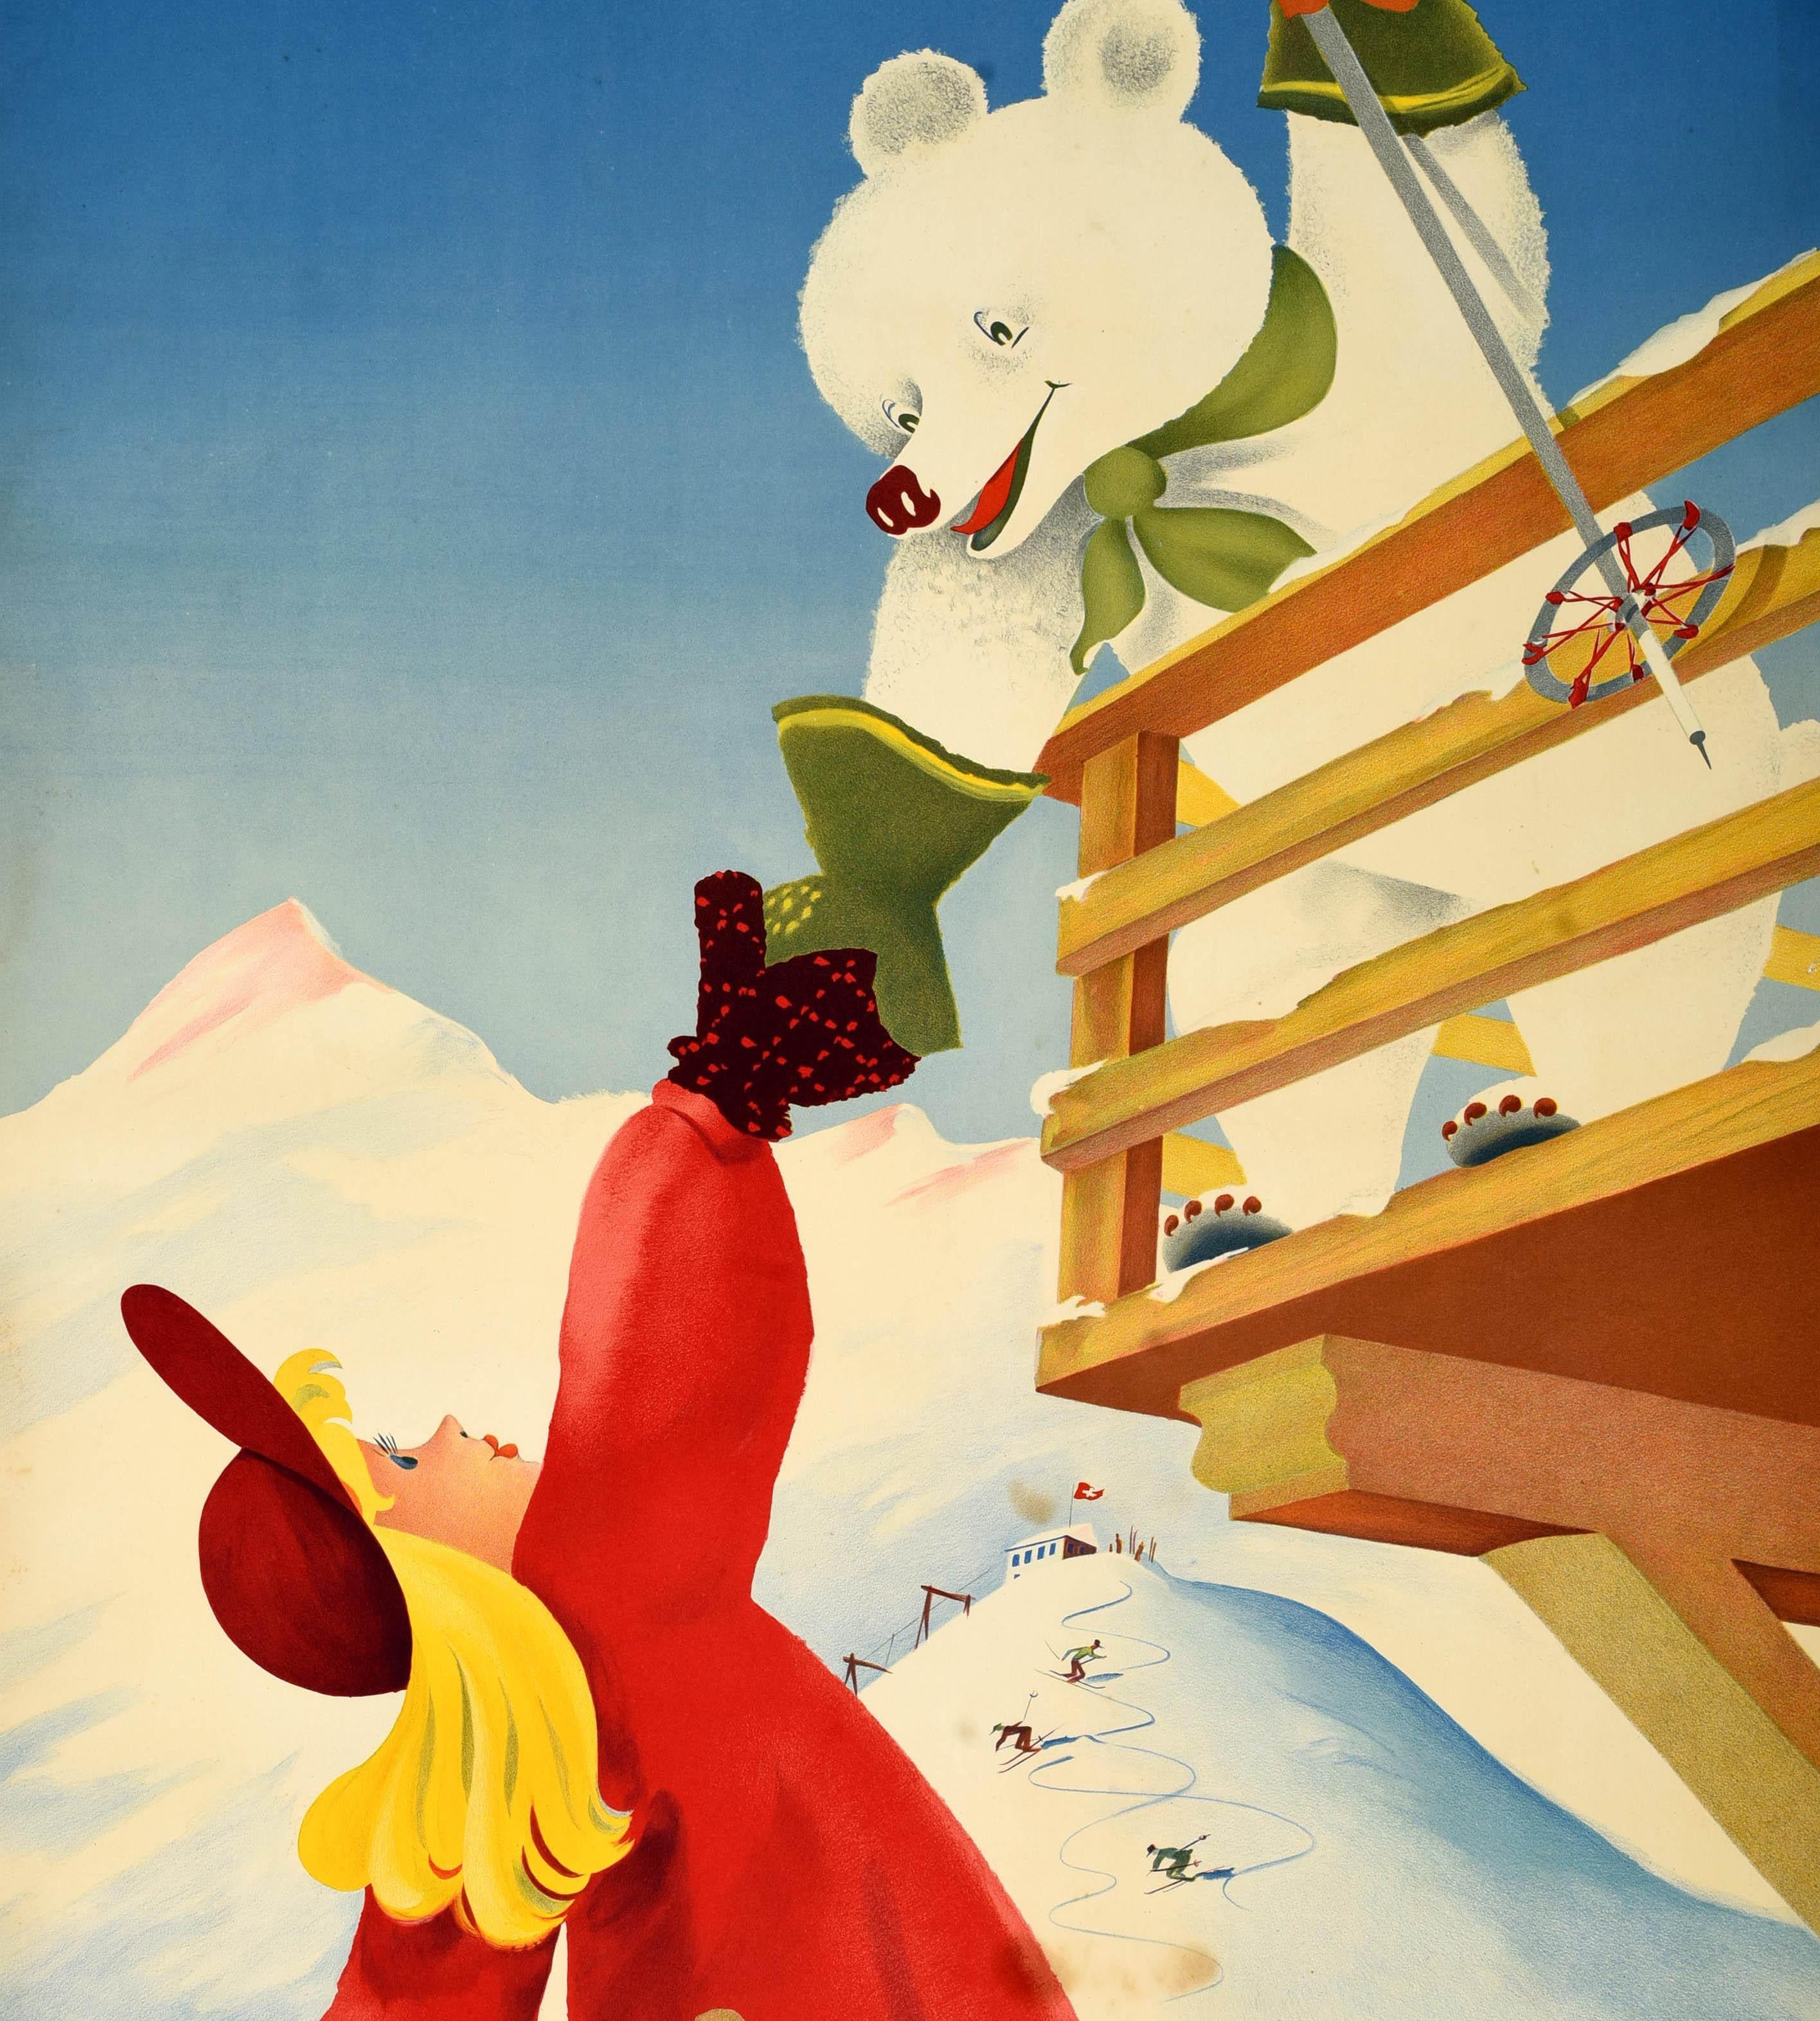 Originelles Vintage-Wintersport-Reiseplakat für Berner Oberland Suisse on y fait du ski jusqu'a fin Avril / Berner Oberland Switzerland skiing until the end of April mit einem lustigen Kunstwerk von Paul Gusset (1909-1975), das einen lächelnden